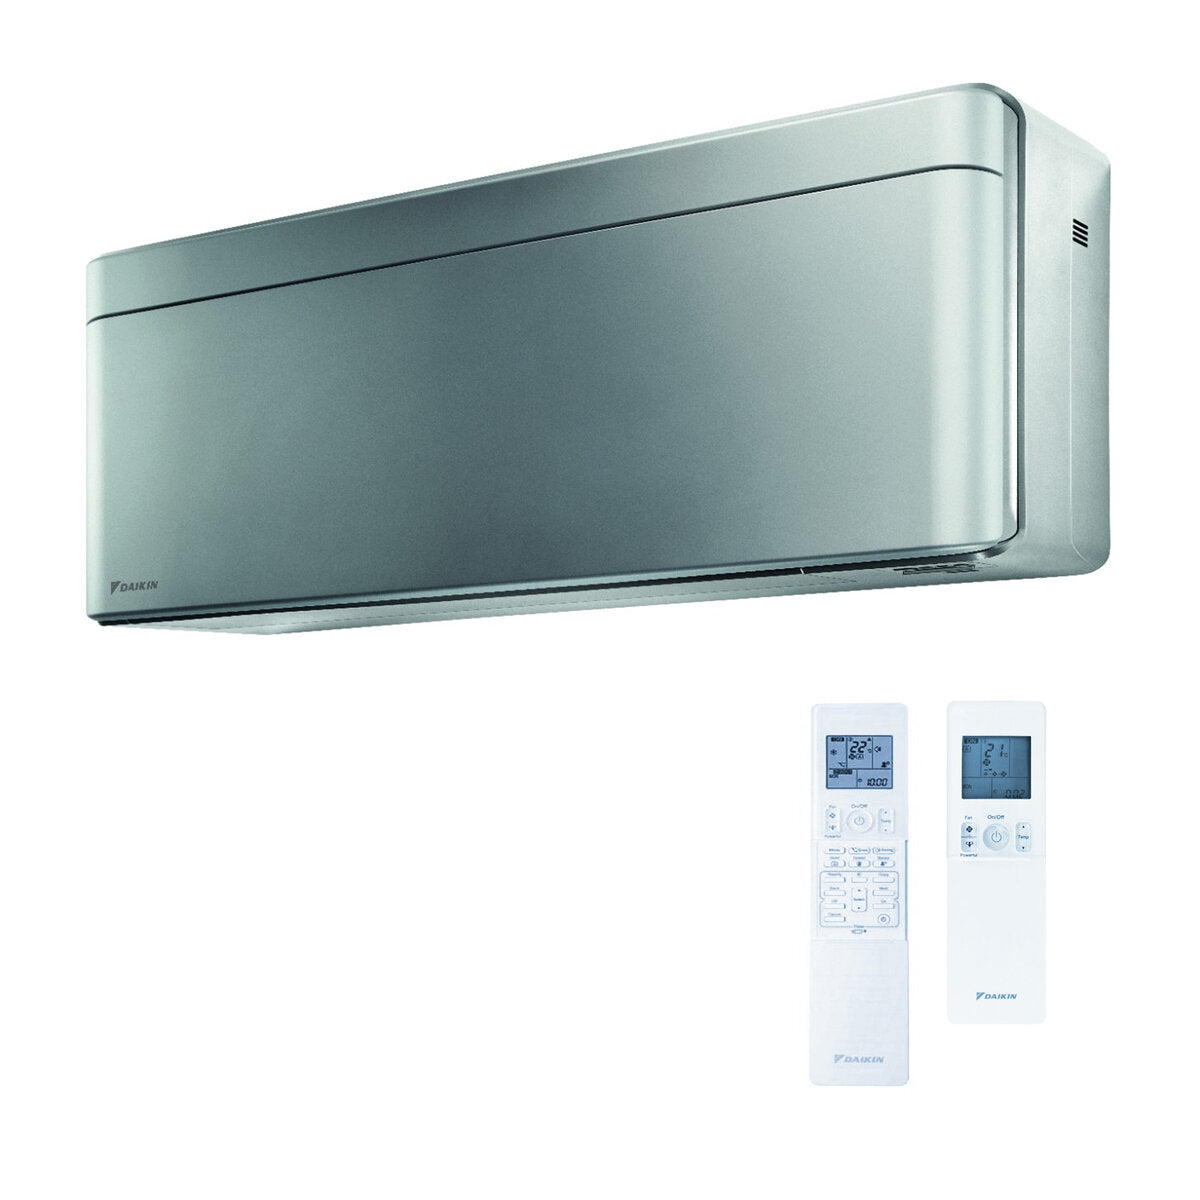 Daikin Stylish 4 split air conditioner 5000 + 5000 + 7000 + 18000 BTU inverter A ++ wifi outdoor unit 6,8 kW